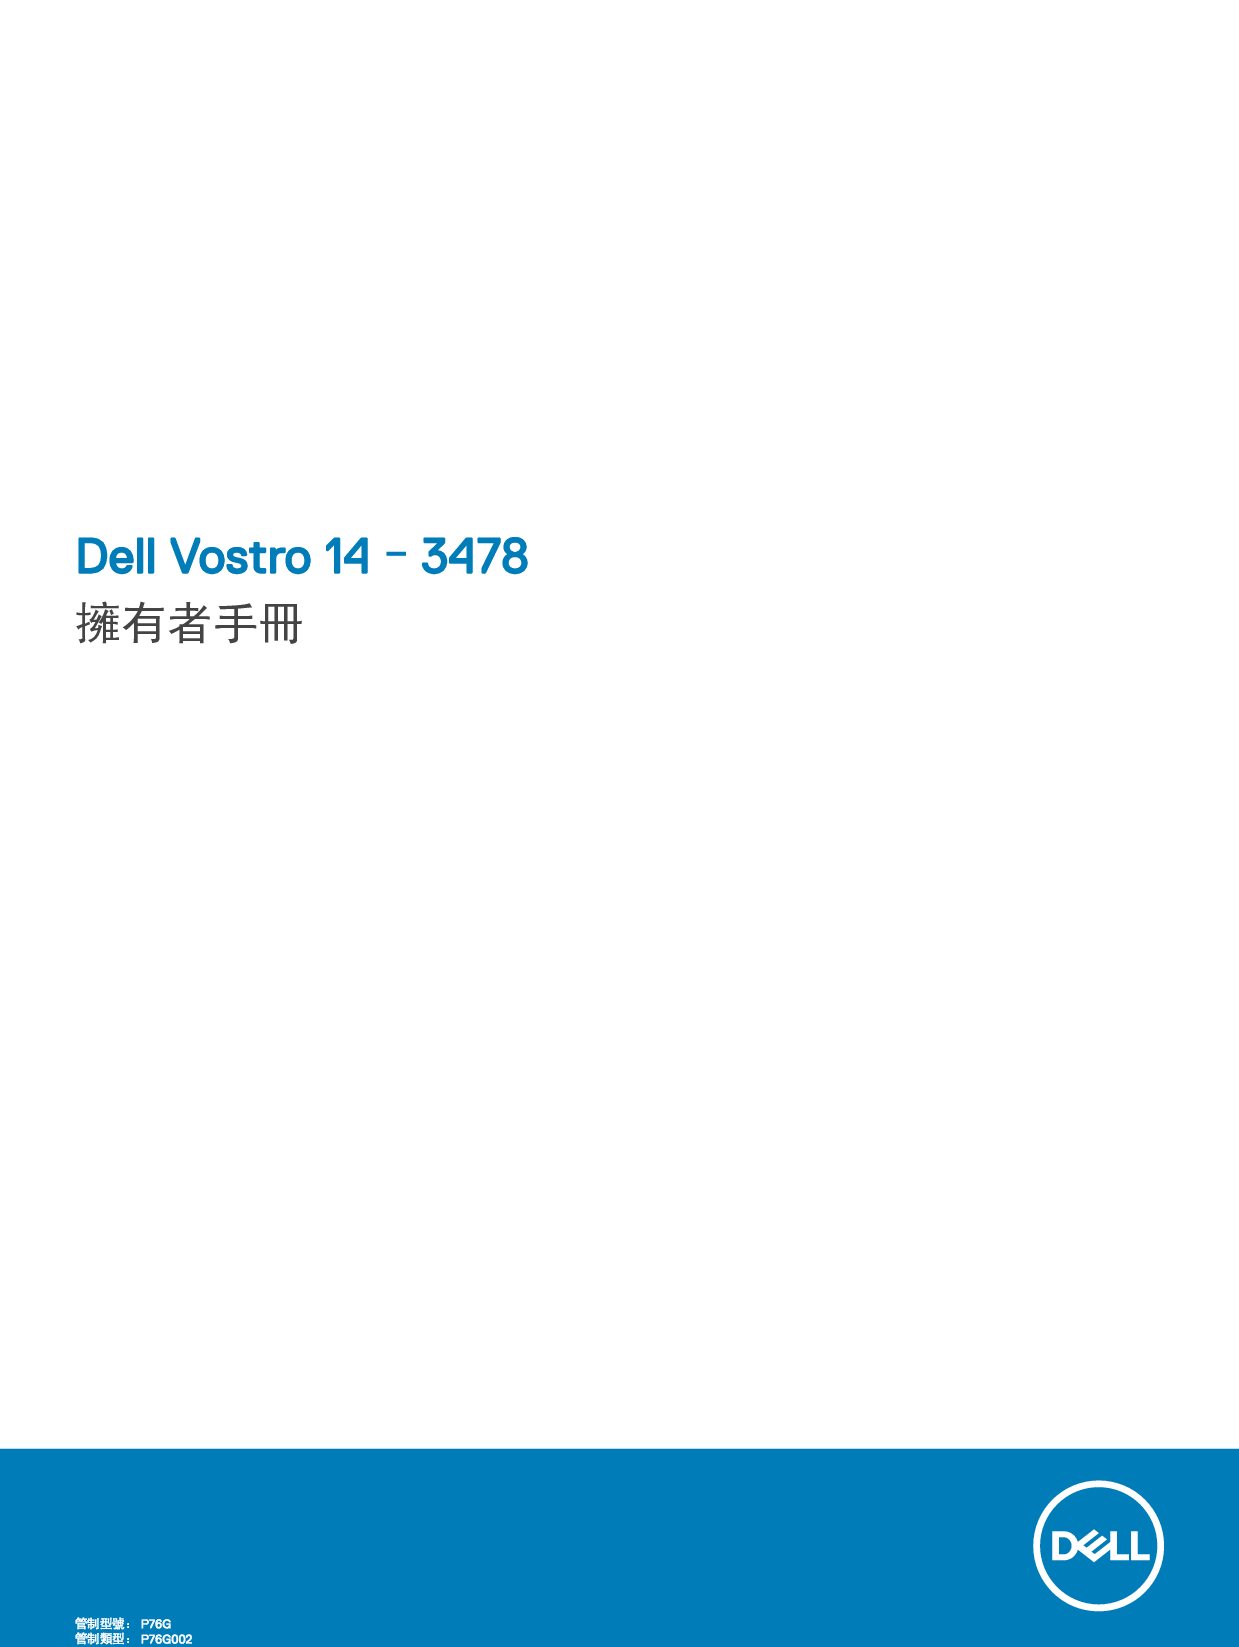 戴尔 Dell Vostro 14-3478 繁体 用户手册 封面